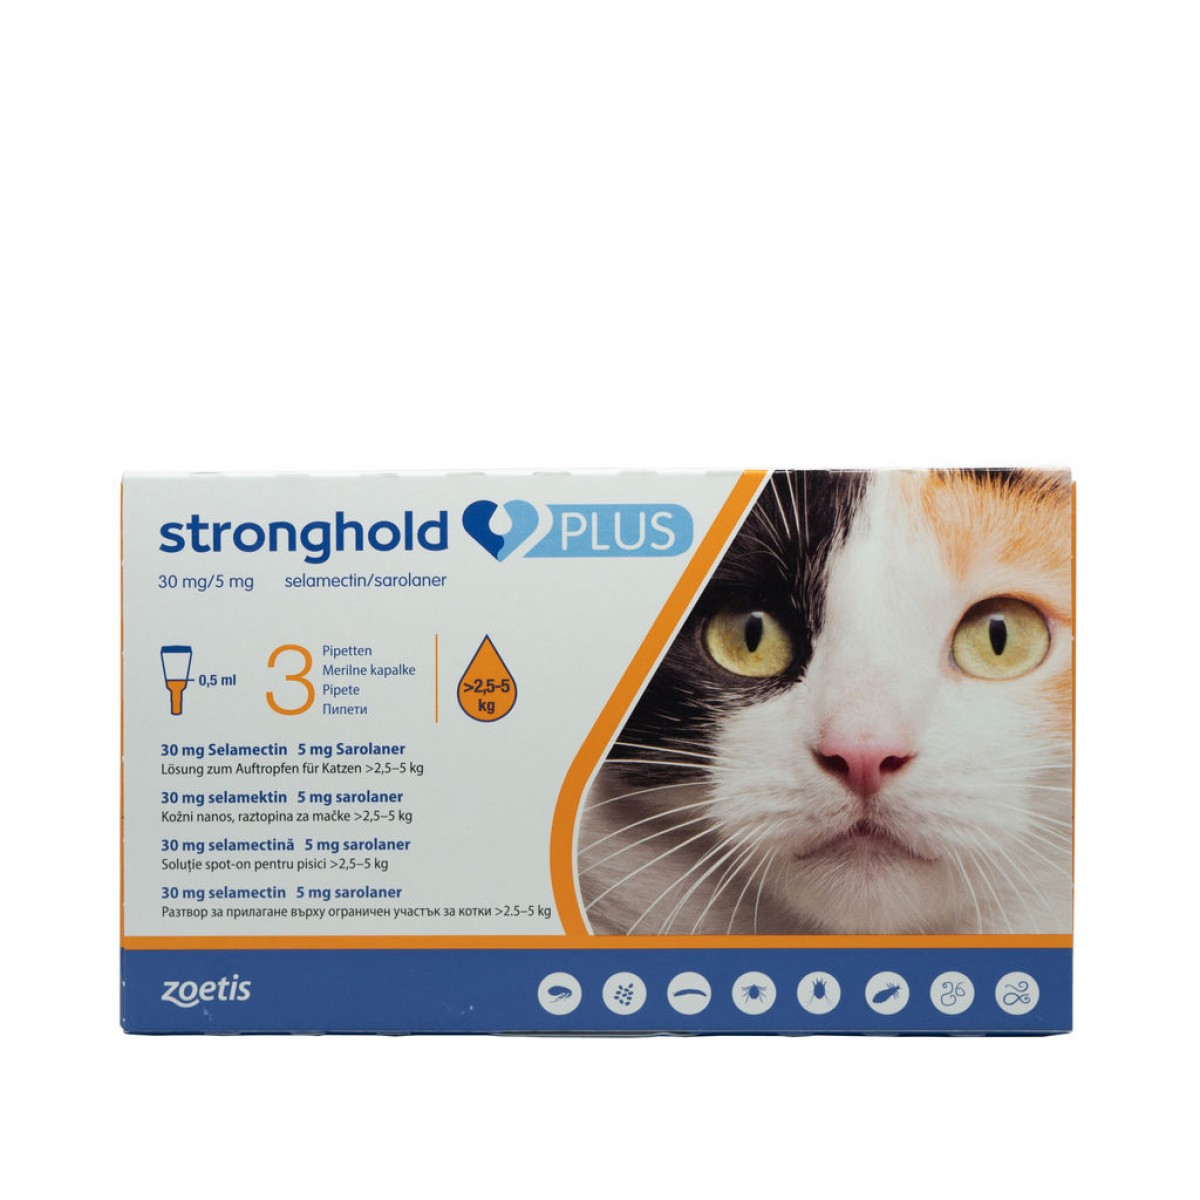 Stronghold Plus pentru pisici de 2.5 - 5kg, 30mg, 3 pipete antiparazitare, Antiparazitare externe, Antiparazitare, Pisici 